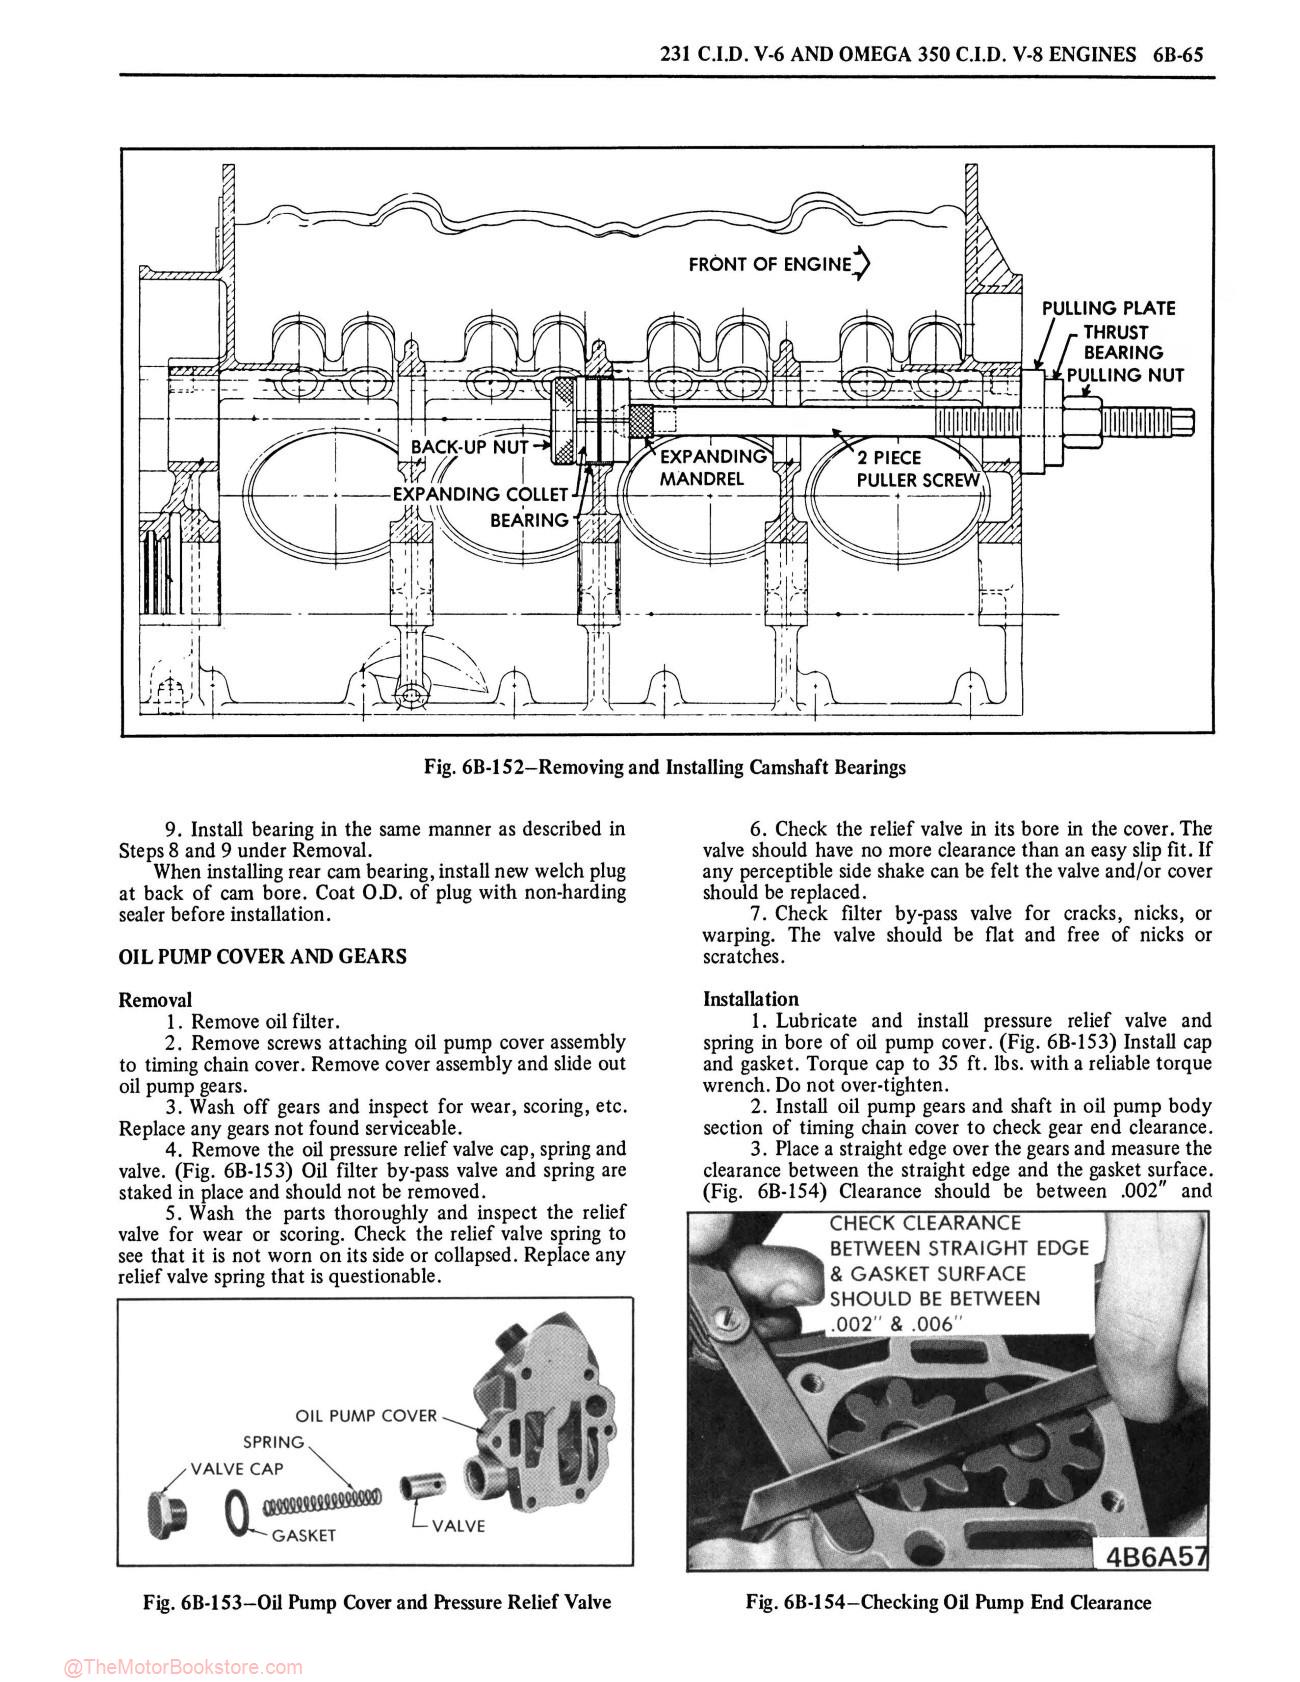 1975 Oldsmobile Service Repair Manual - Sample Page 1